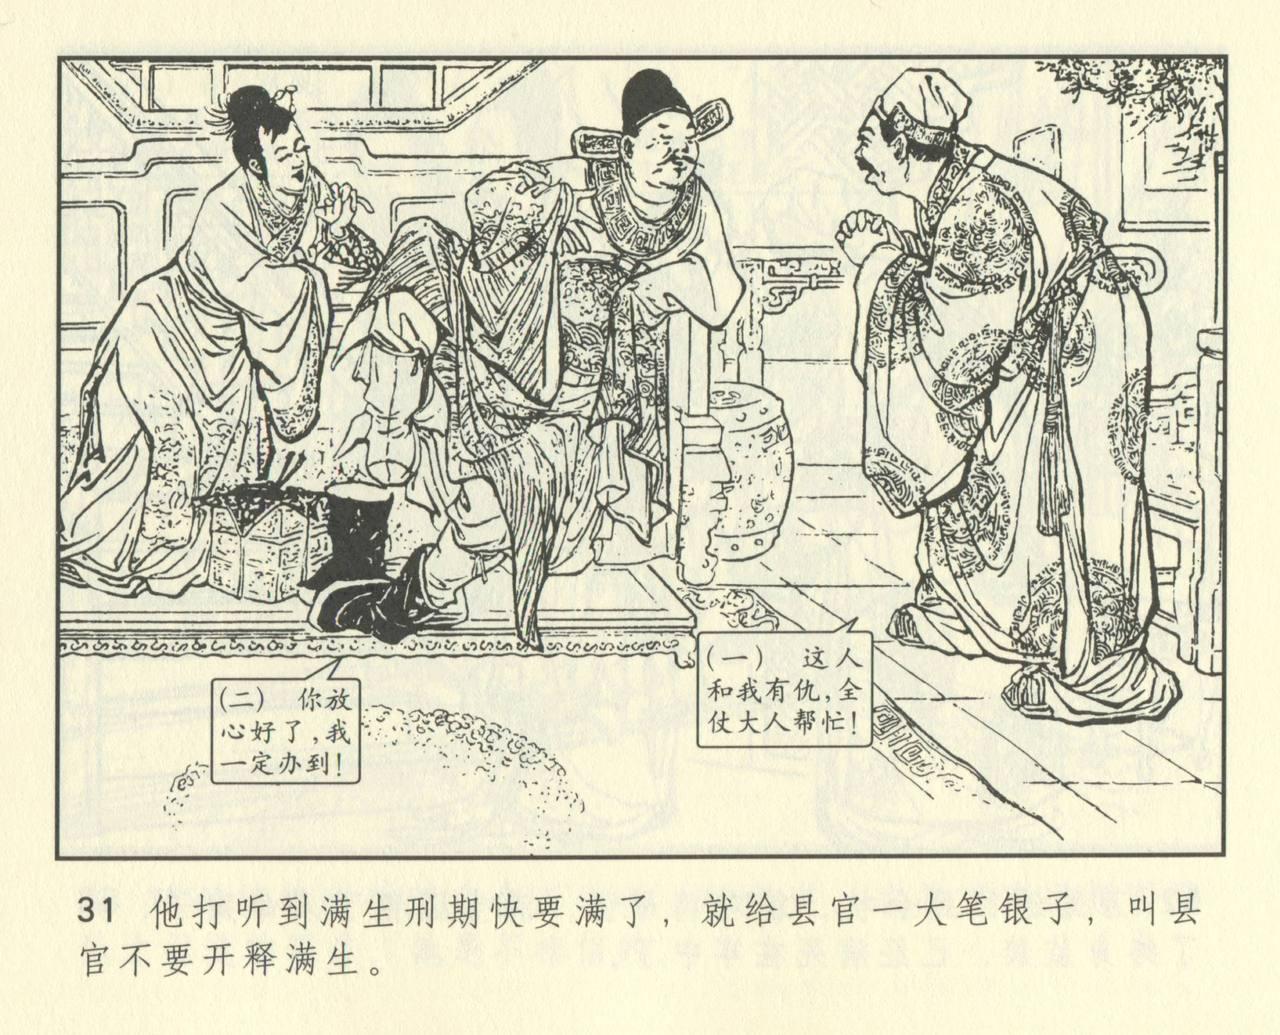 聊斋志异 张玮等绘 天津人民美术出版社 卷二十一 ~ 三十 442